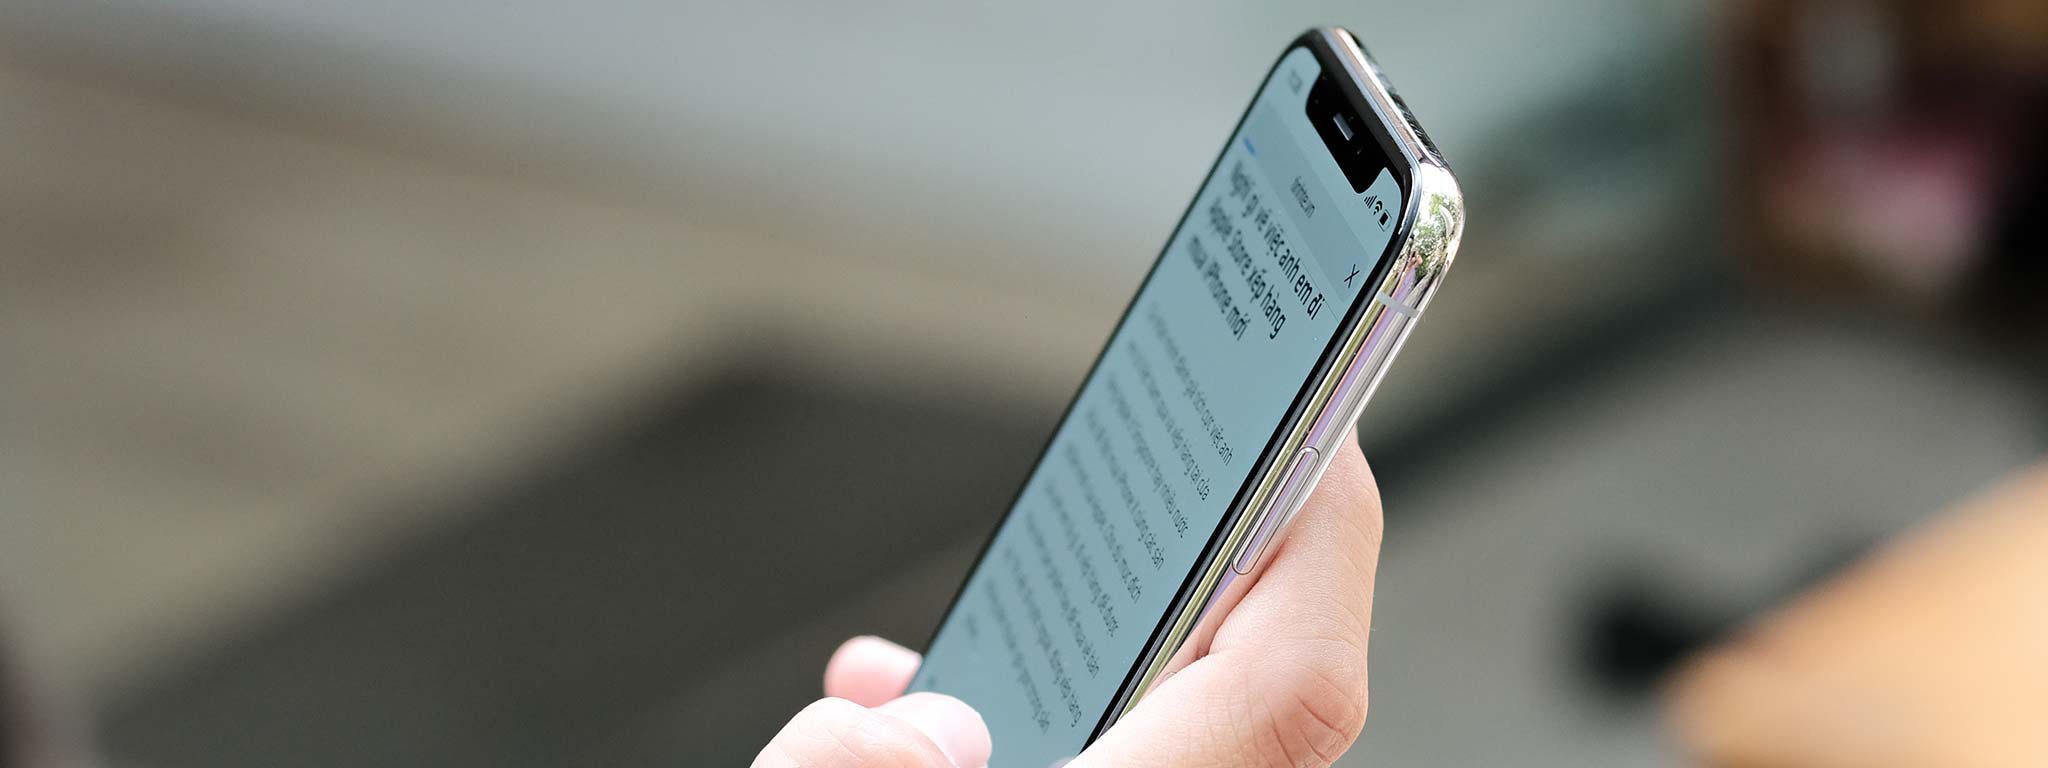 Đối tác sắp bắt đầu sản xuất panel OLED cho iPhone 2018, vẫn đang thương lượng giá